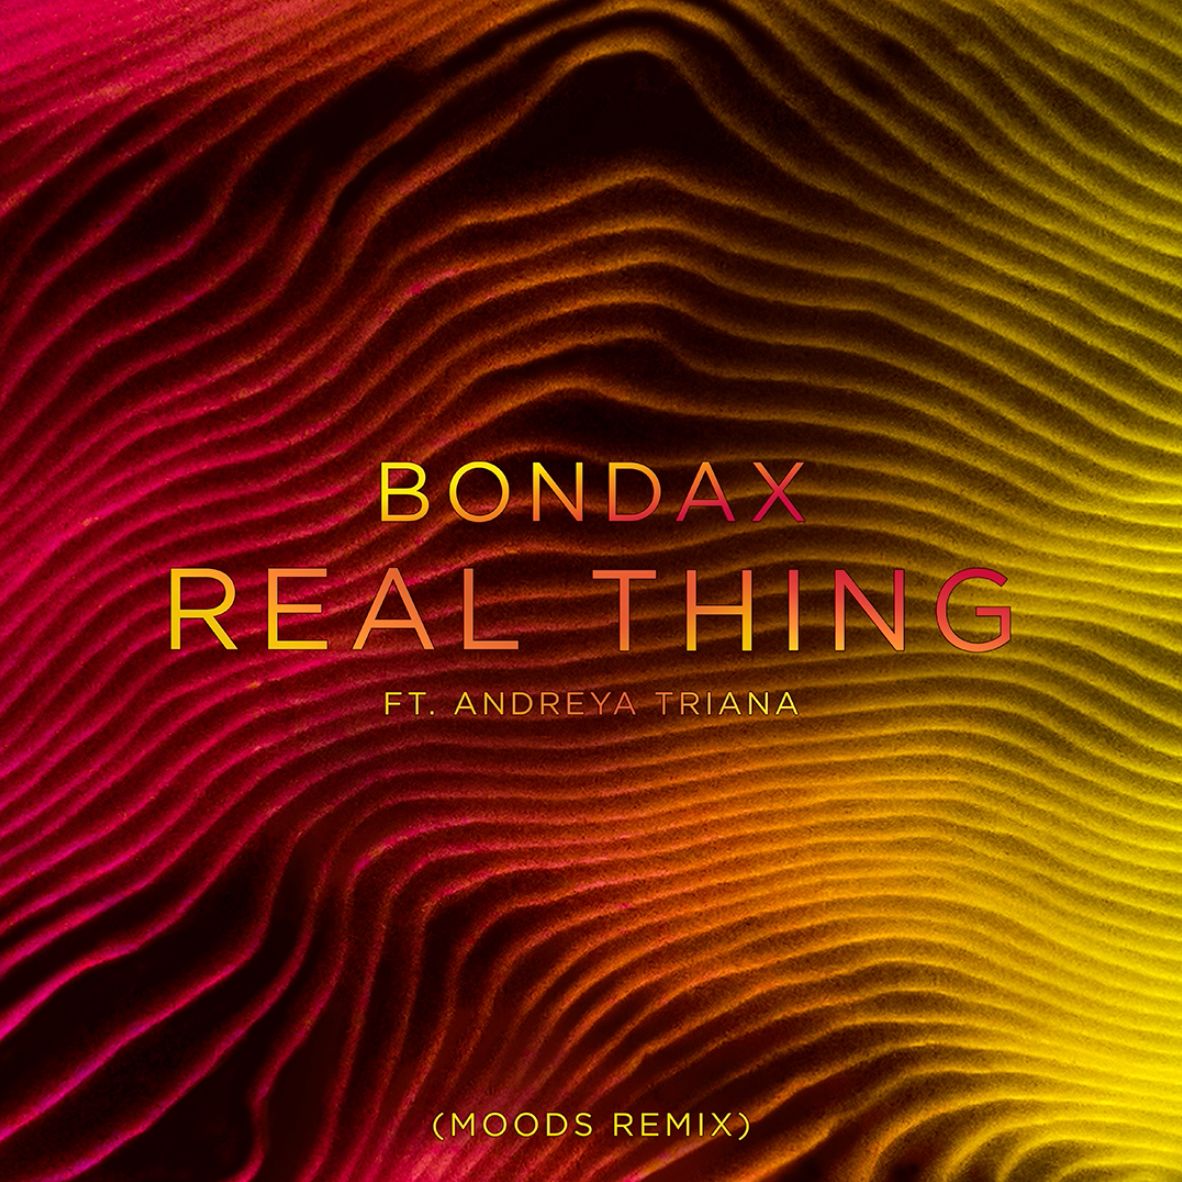 Tsitsani Bondax - Real Thing ft. Andreya Triana (Moods Remix)